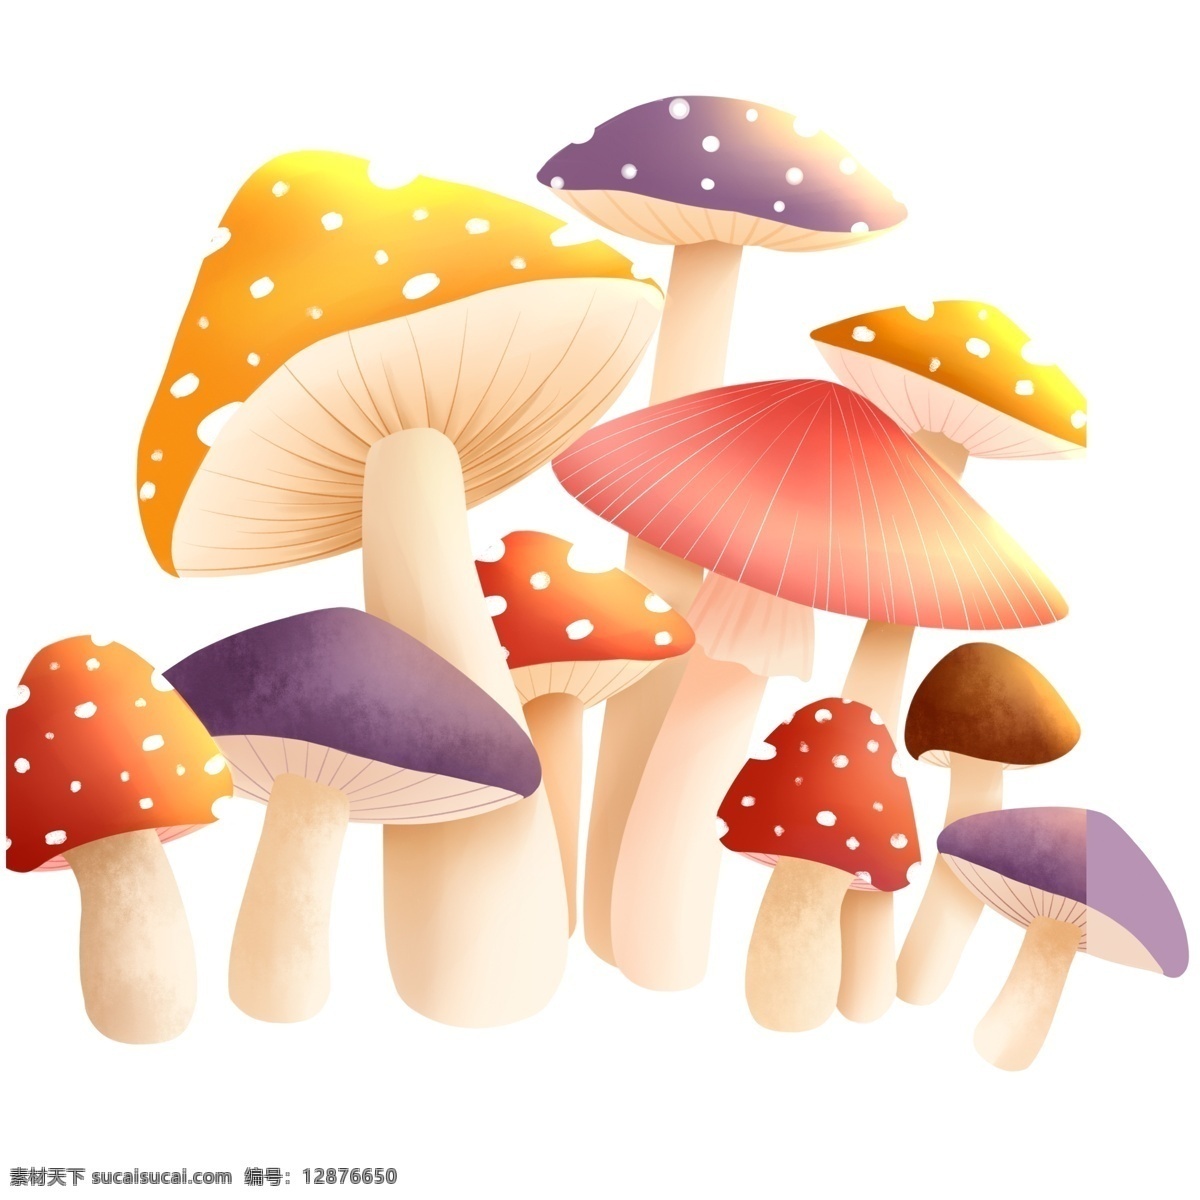 清新 彩色 蘑菇 元素 手绘 卡通 蘑菇元素 插画